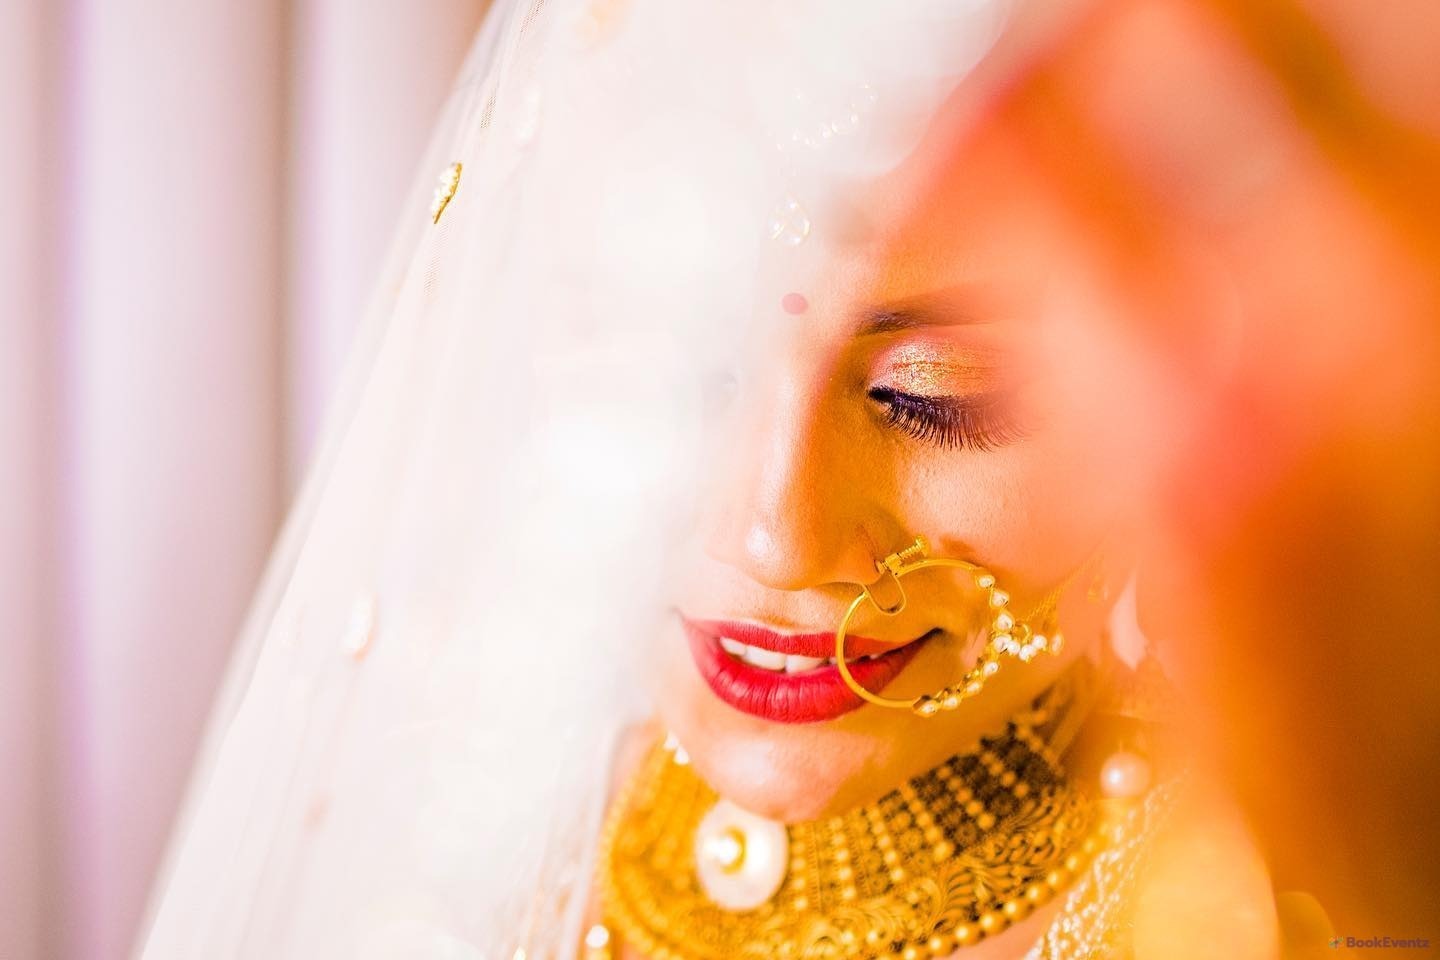 Da Wedding Thread Productionz Wedding Photographer, Delhi NCR